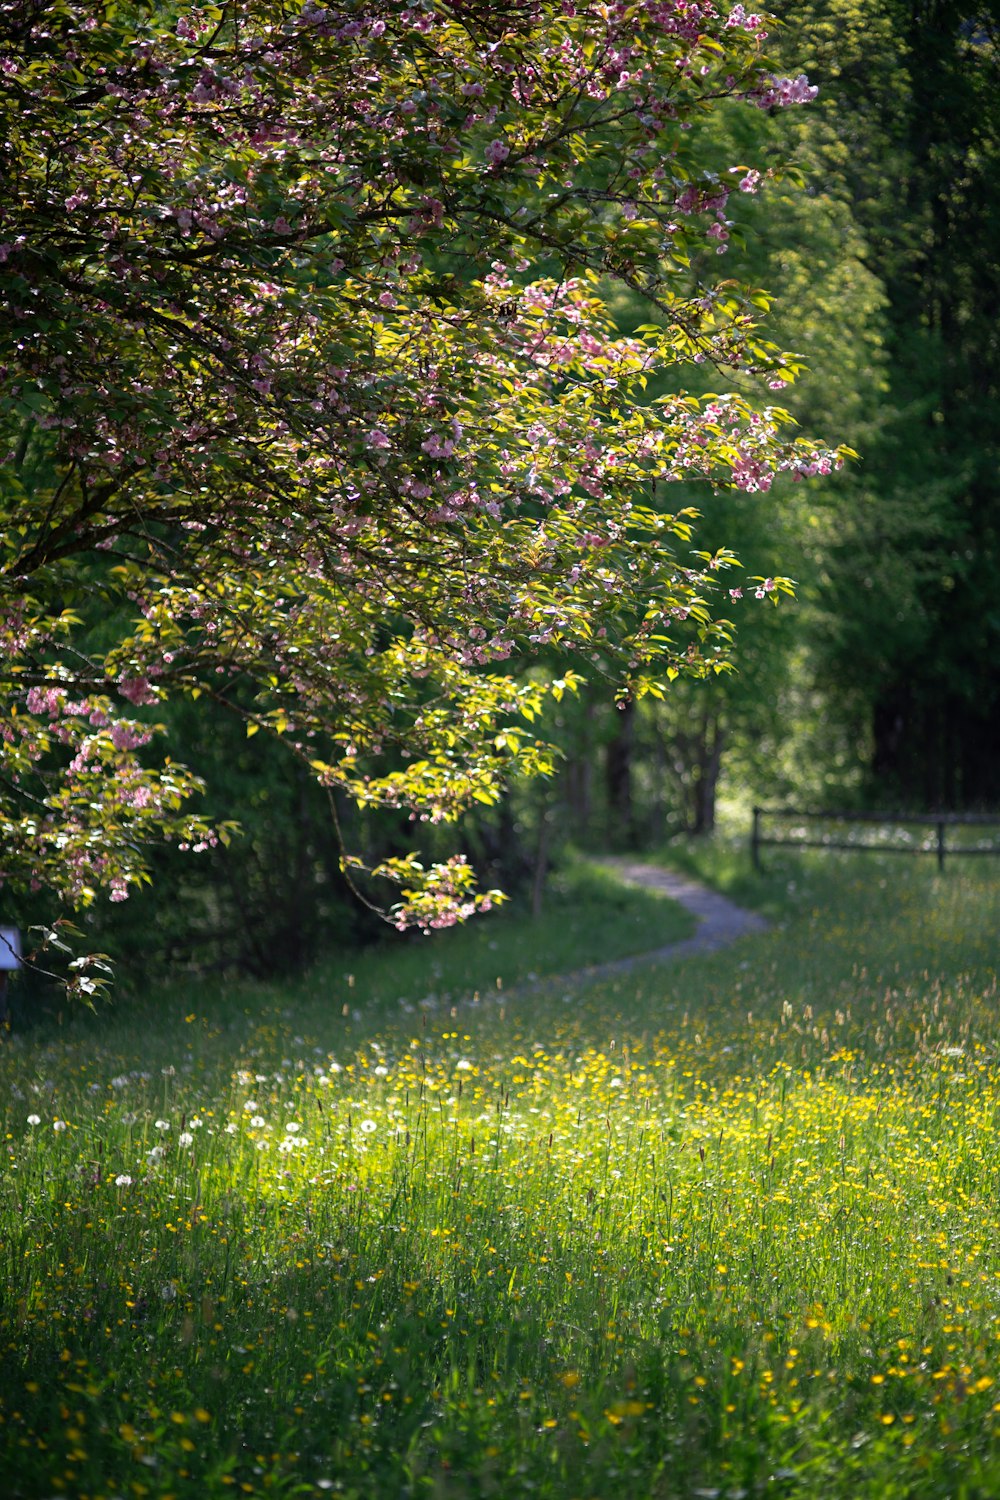 a woman walking down a path through a lush green field